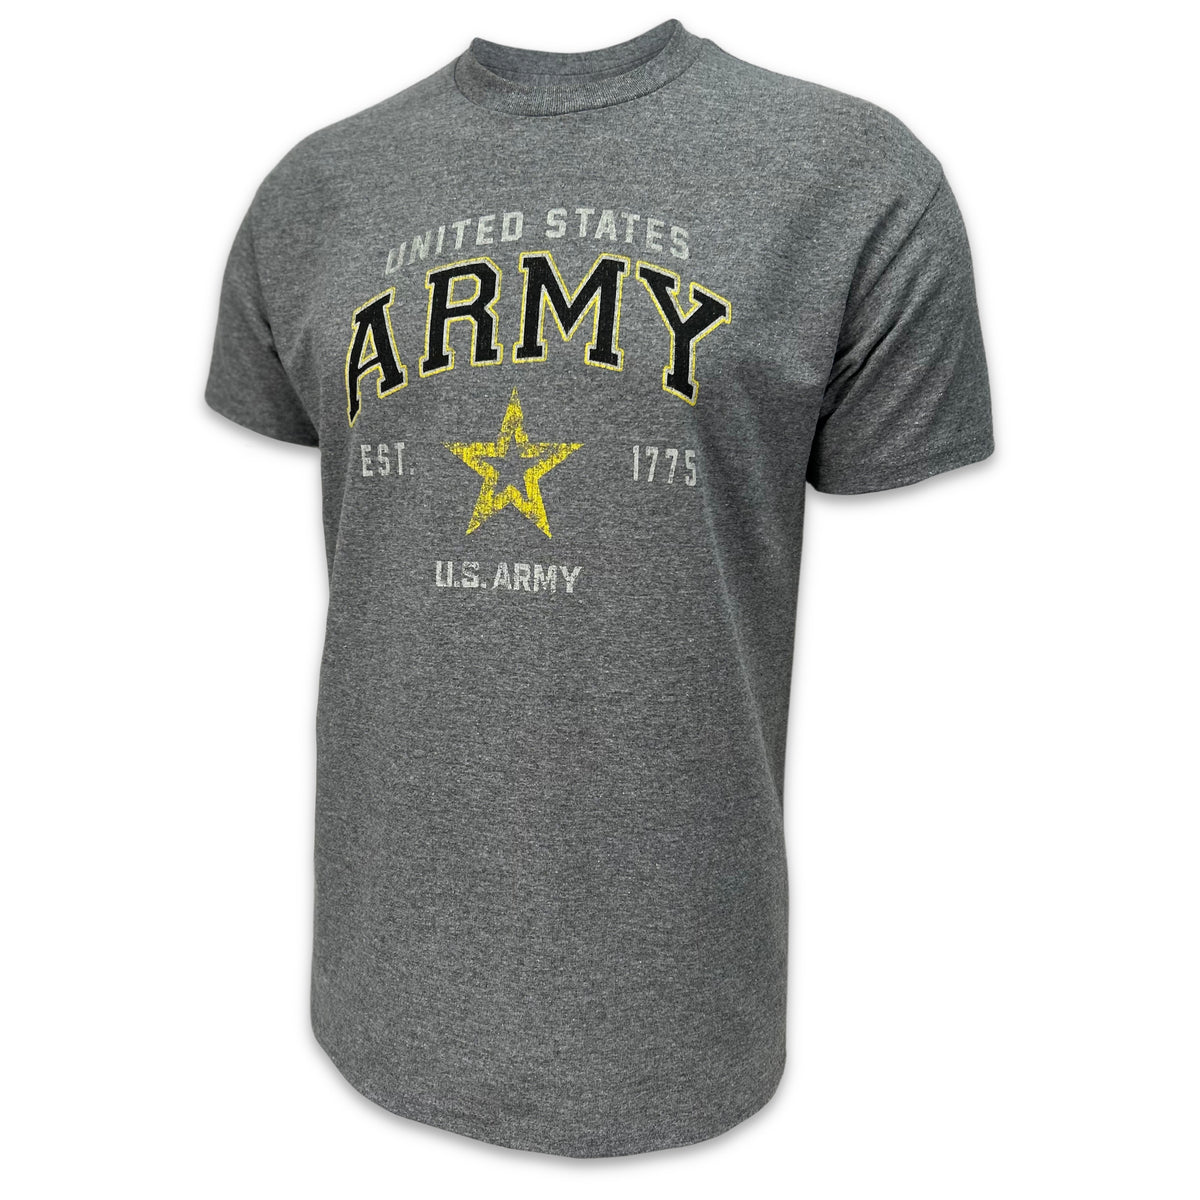 Army Gear: Army Star Est. 1775 T-Shirt in Grey